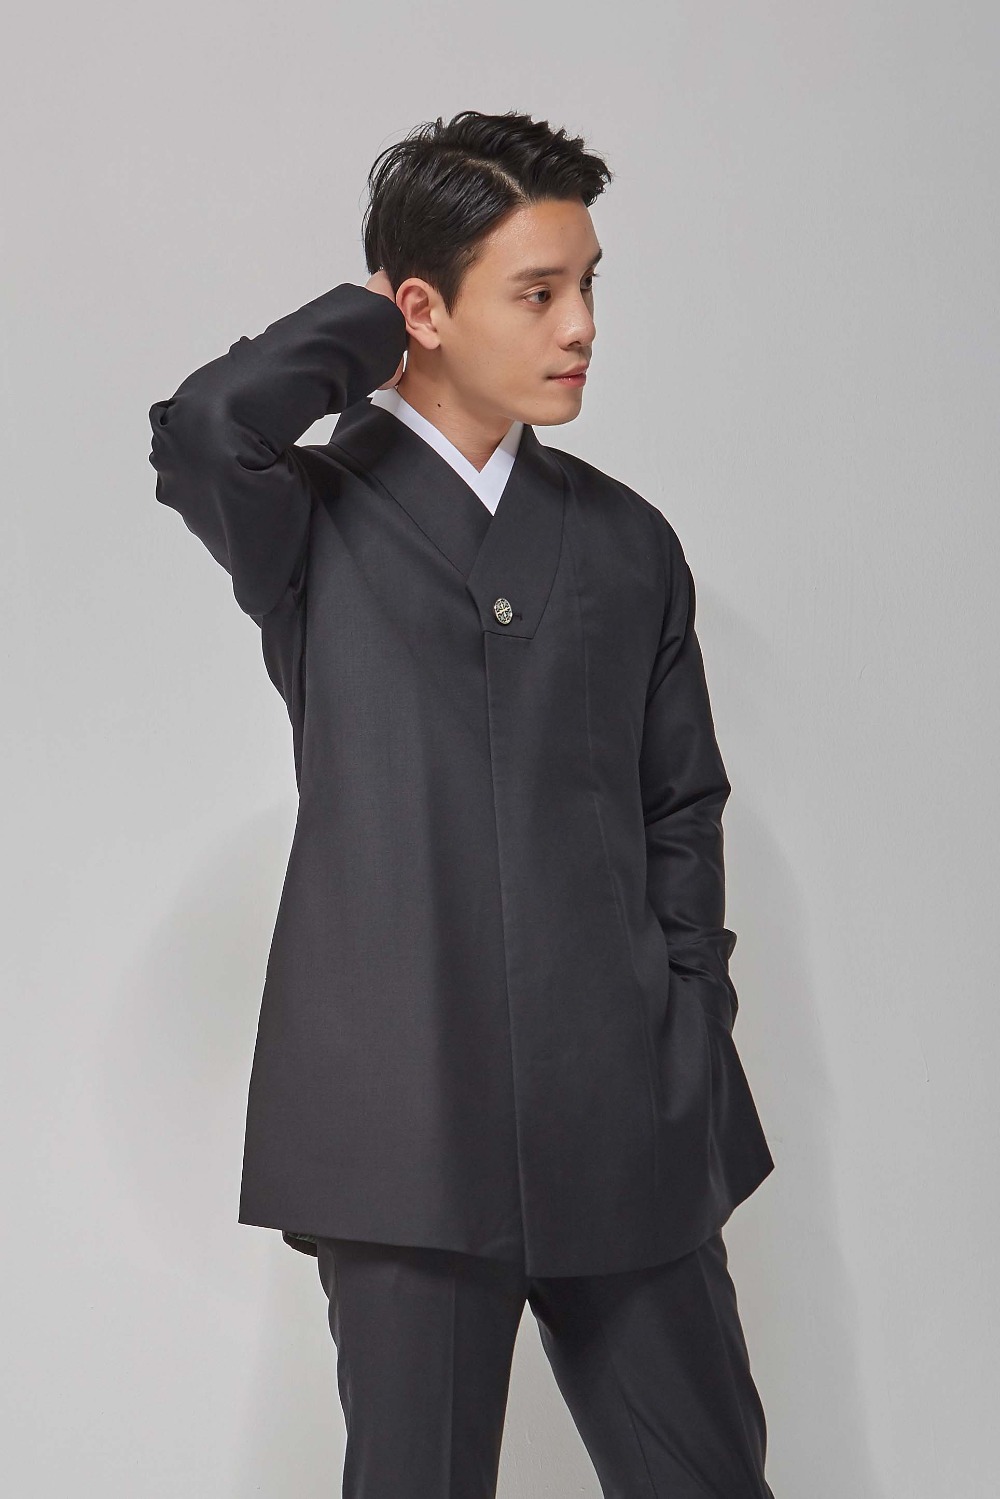 Fastened Collar Long Hanbok Suit Jacket  - Black